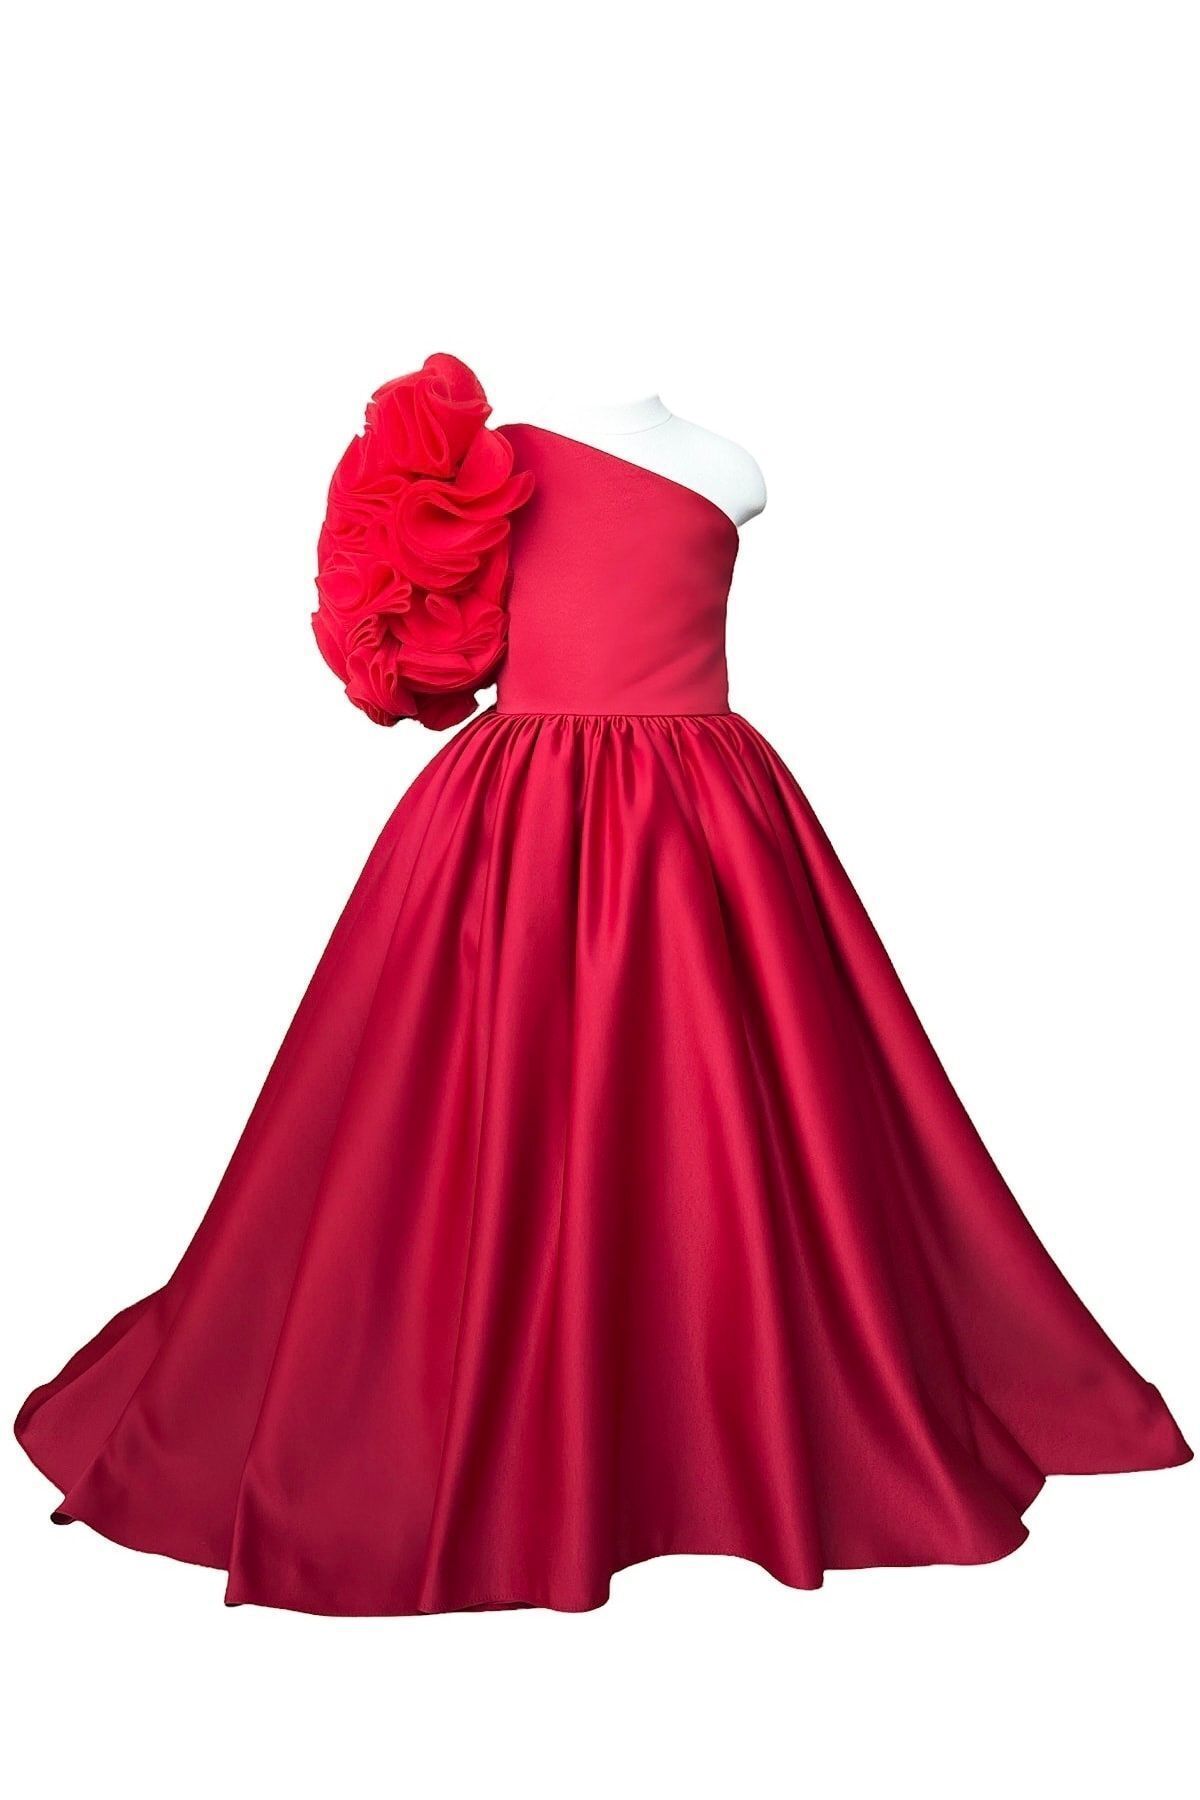 zühre balaban Red Rosetta Girl Dress Kırmızı Kız Çocuk Abiye Elbise